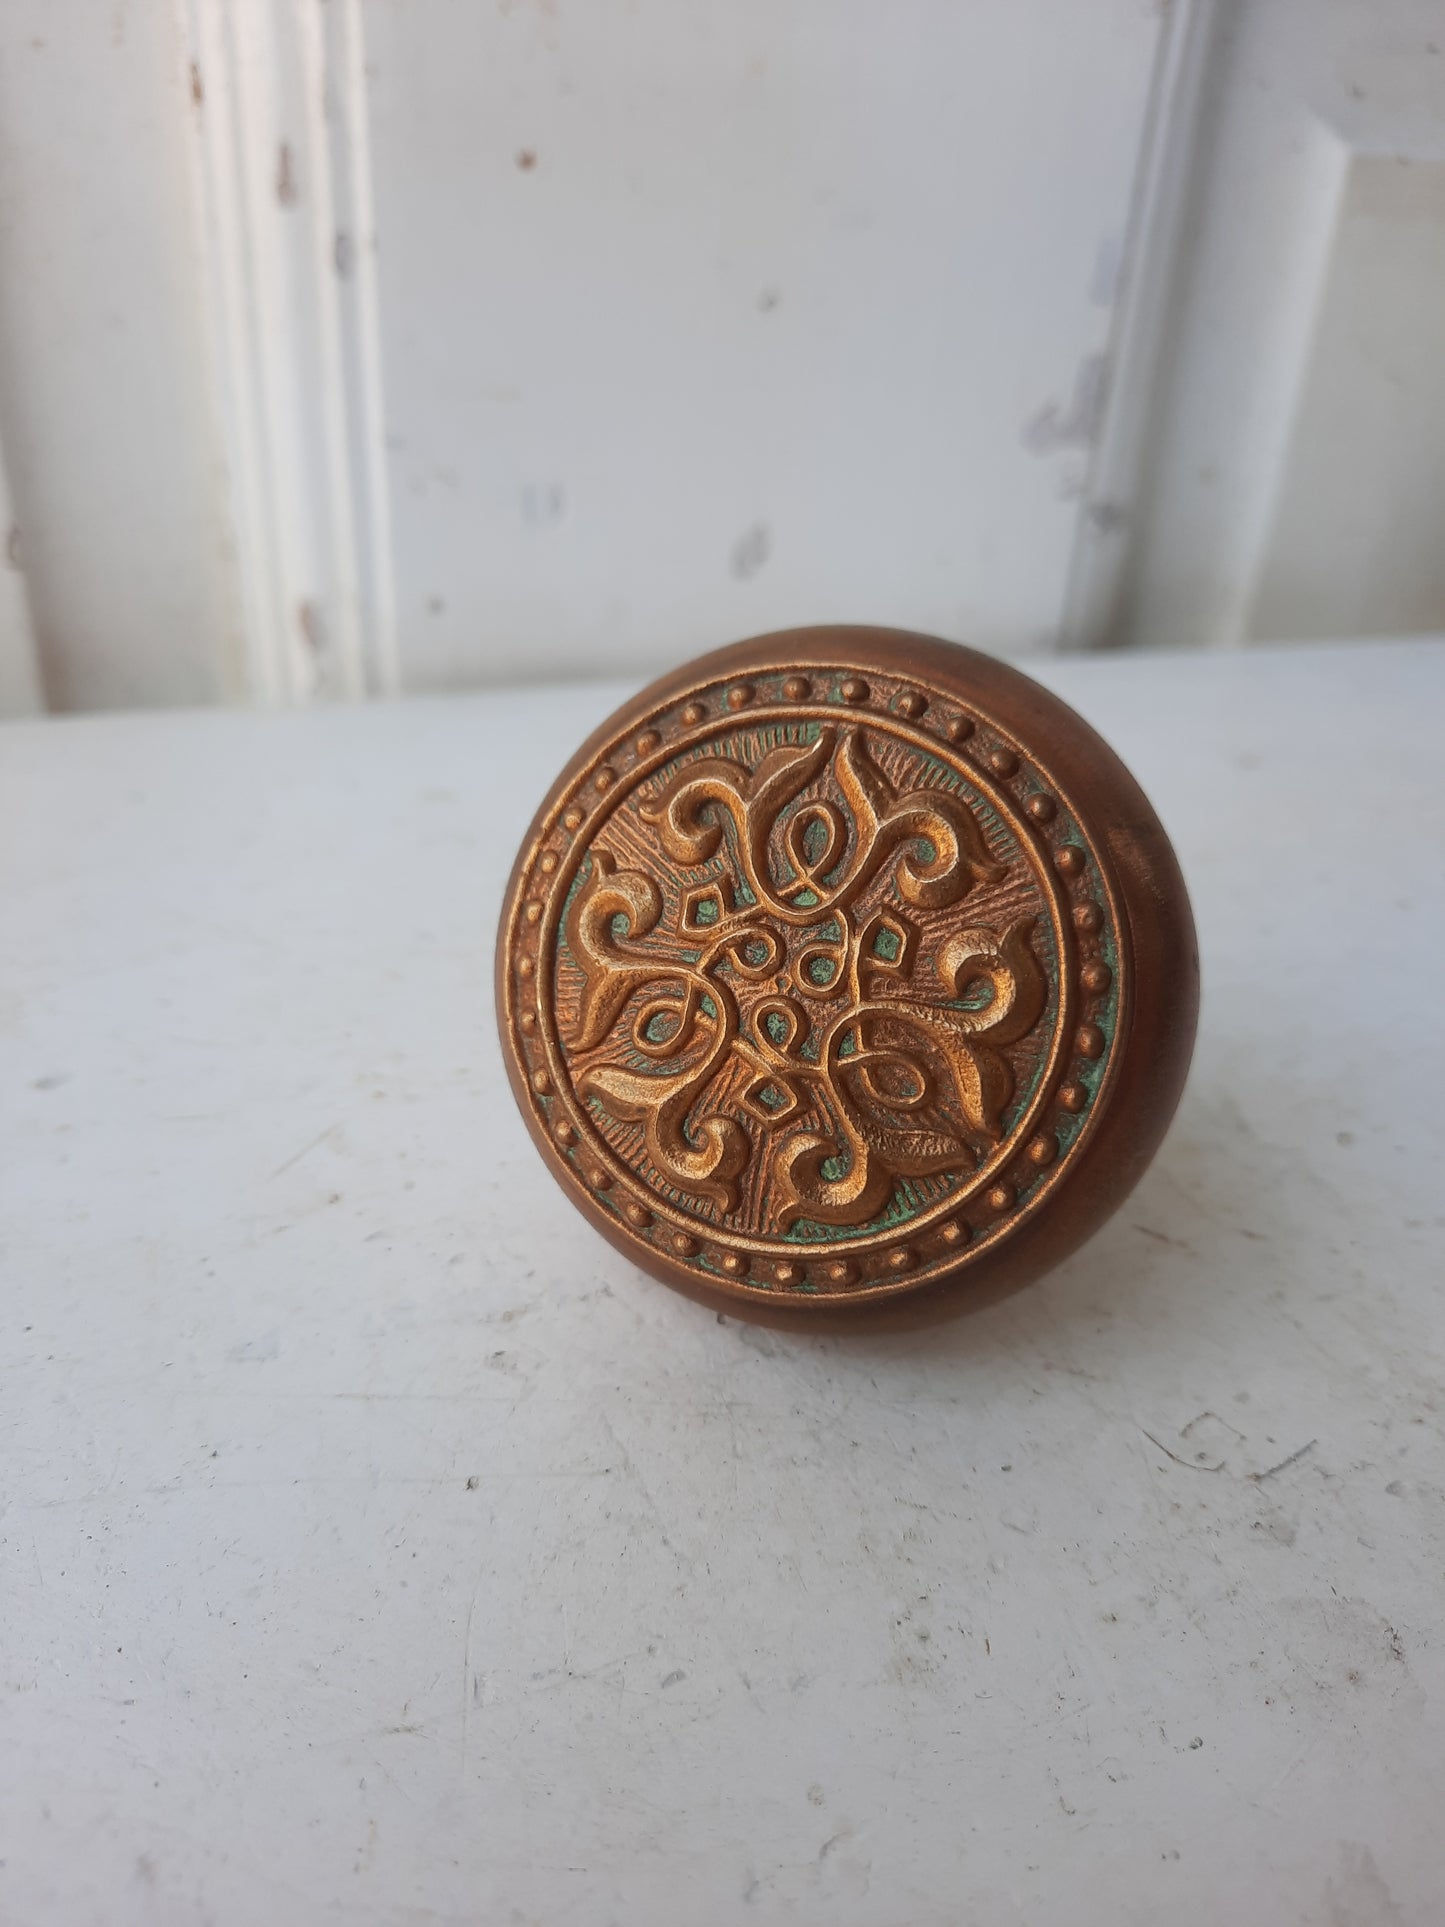 Antique Doorknob with Interlocking Loop Design, Swirl Pattern Bronze Door Knob